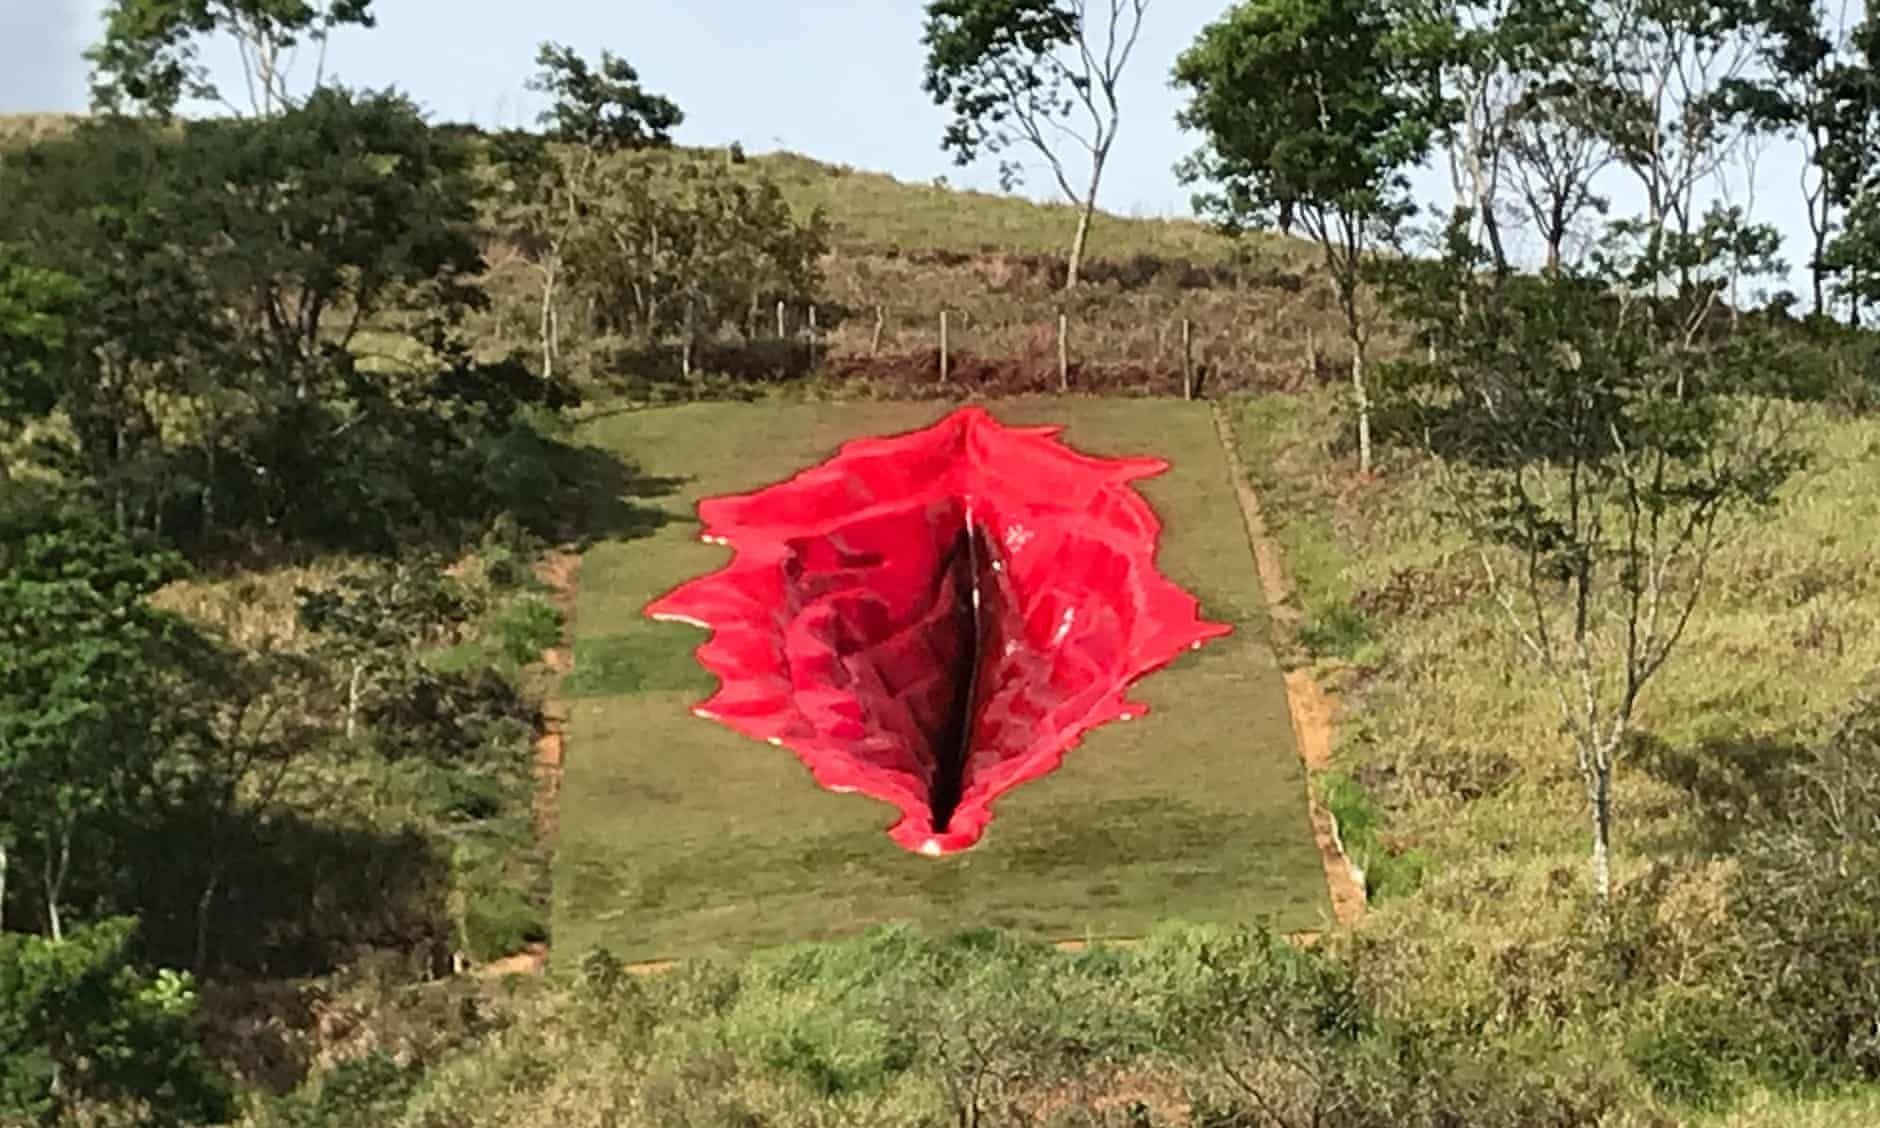 Скульптура 33-метрового влагалища в Бразилии: фото, что известно